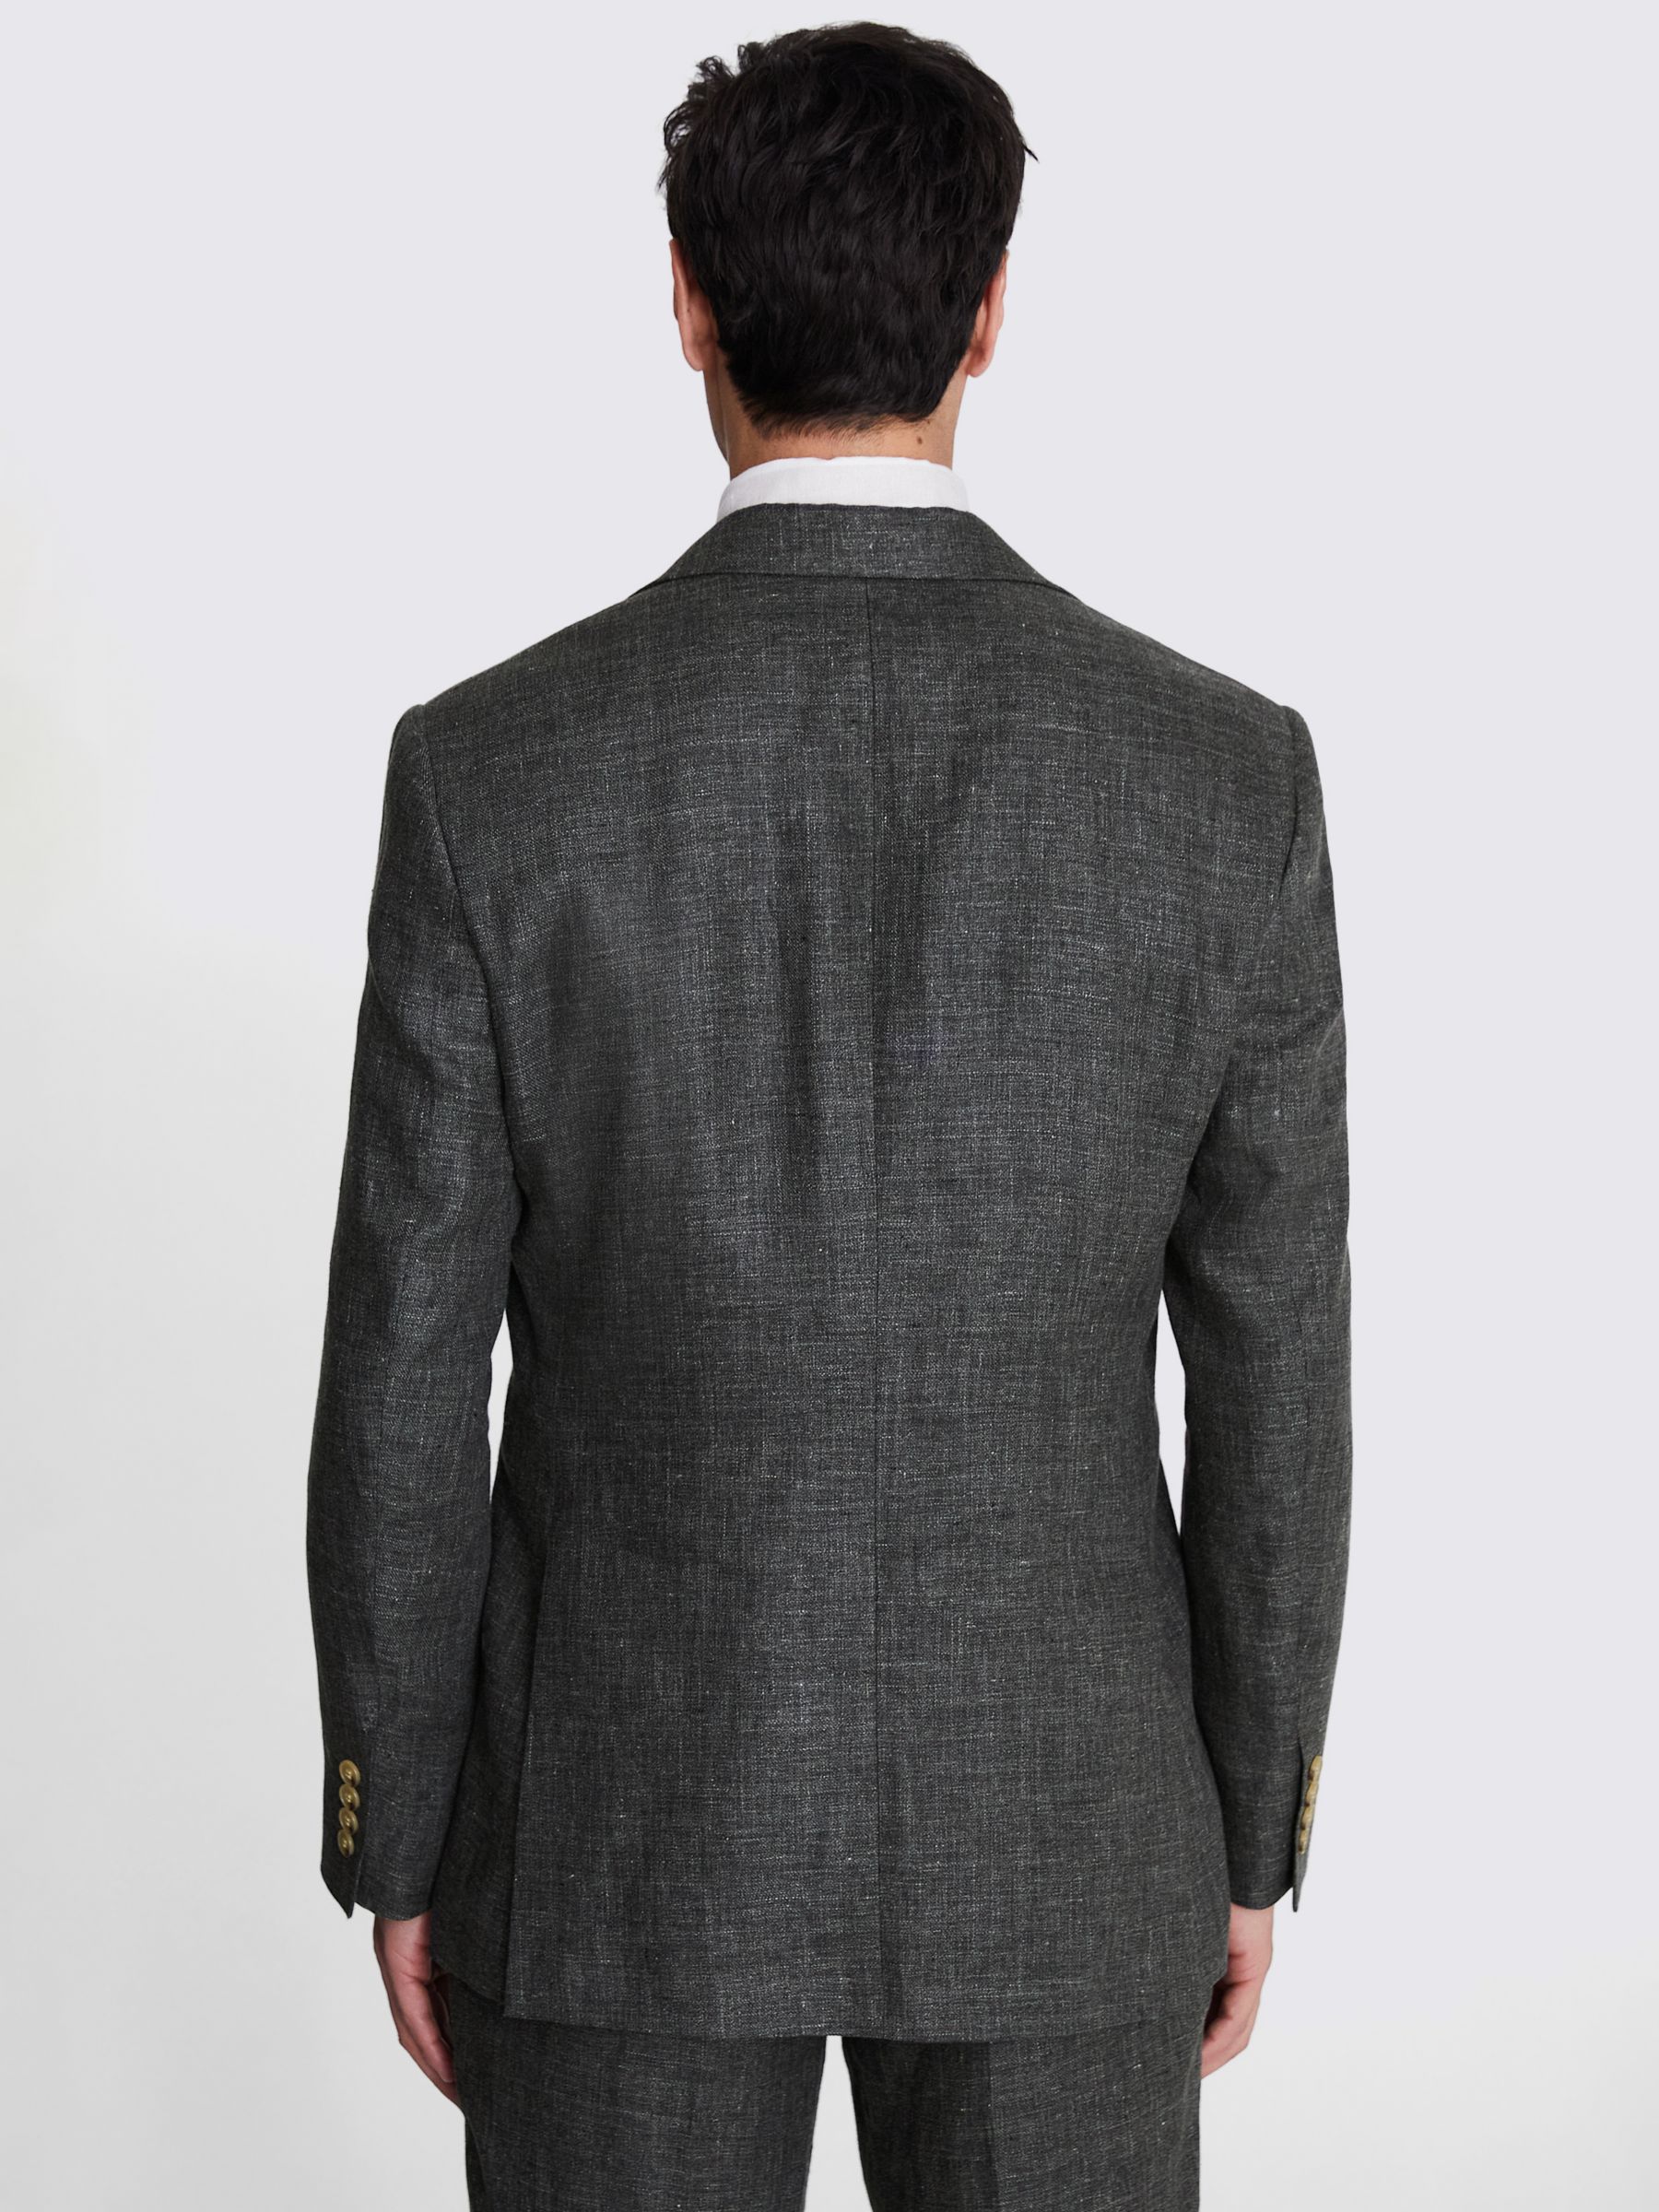 Moss Linen Suit Jacket, Khaki, 36R